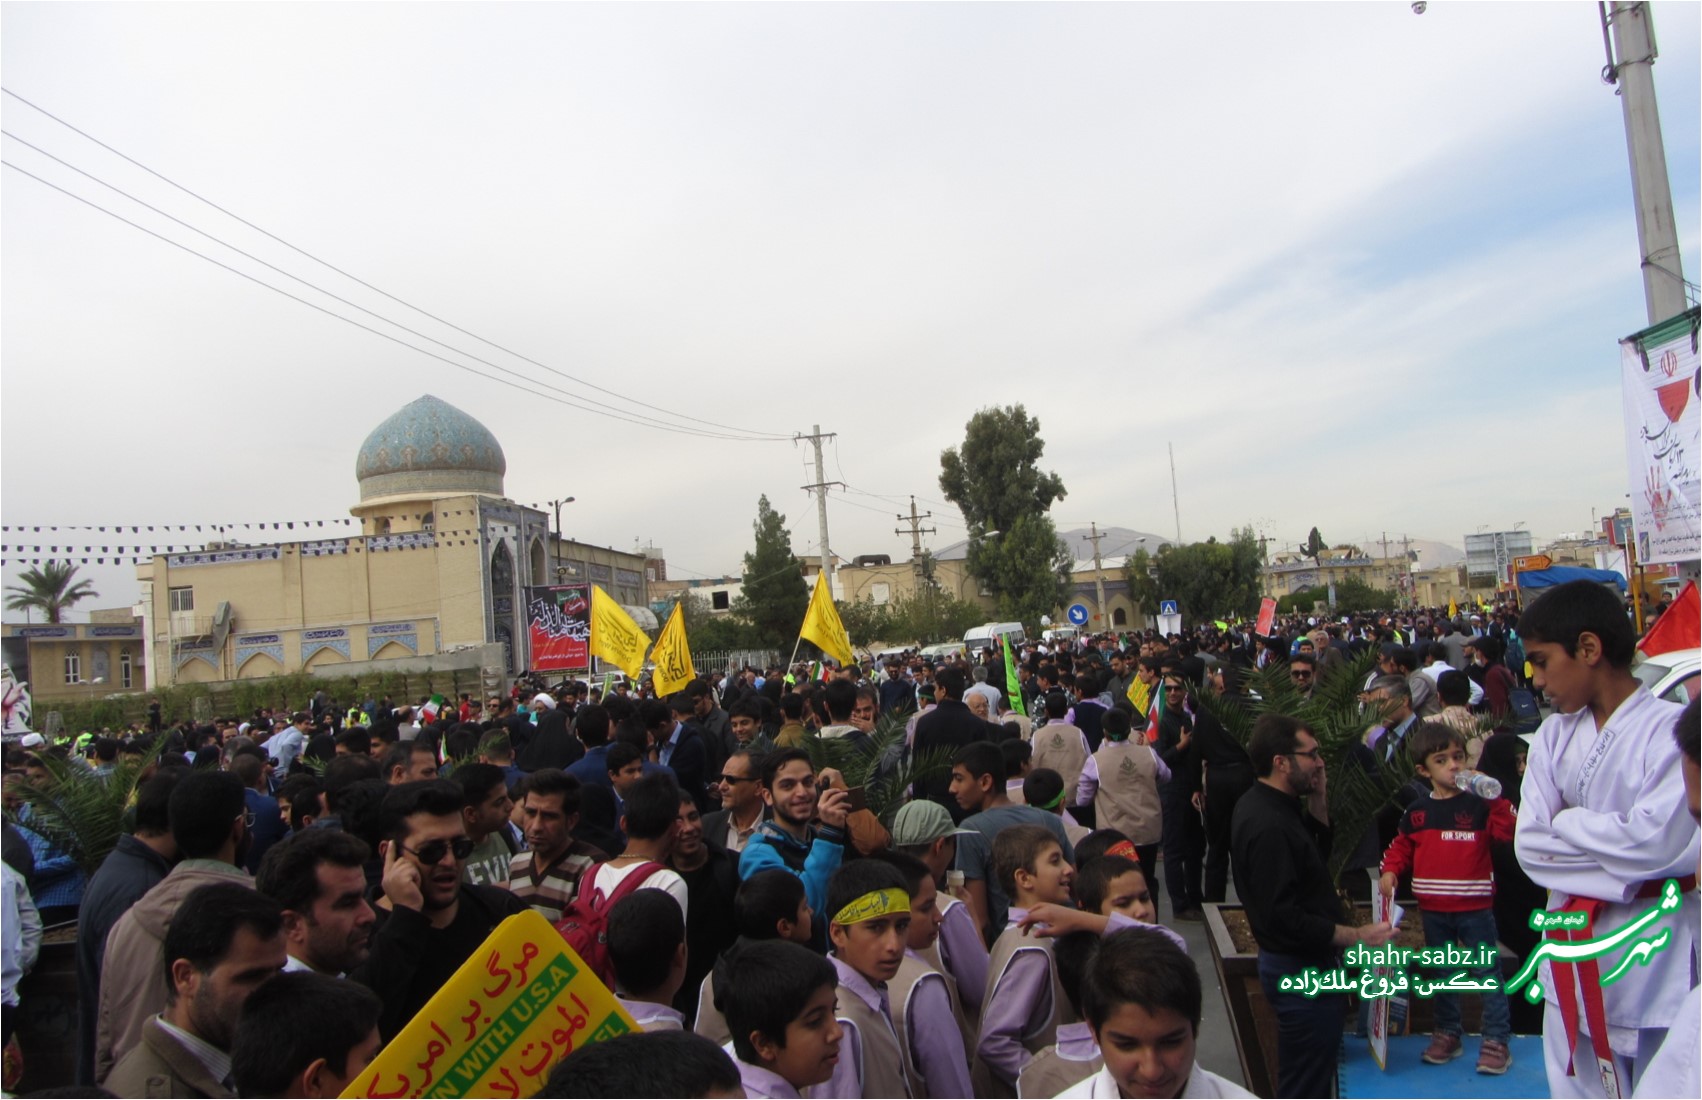 تجمع ضد استکباری 13 آبان در شیراز/ عکس: فروغ ملک زاده